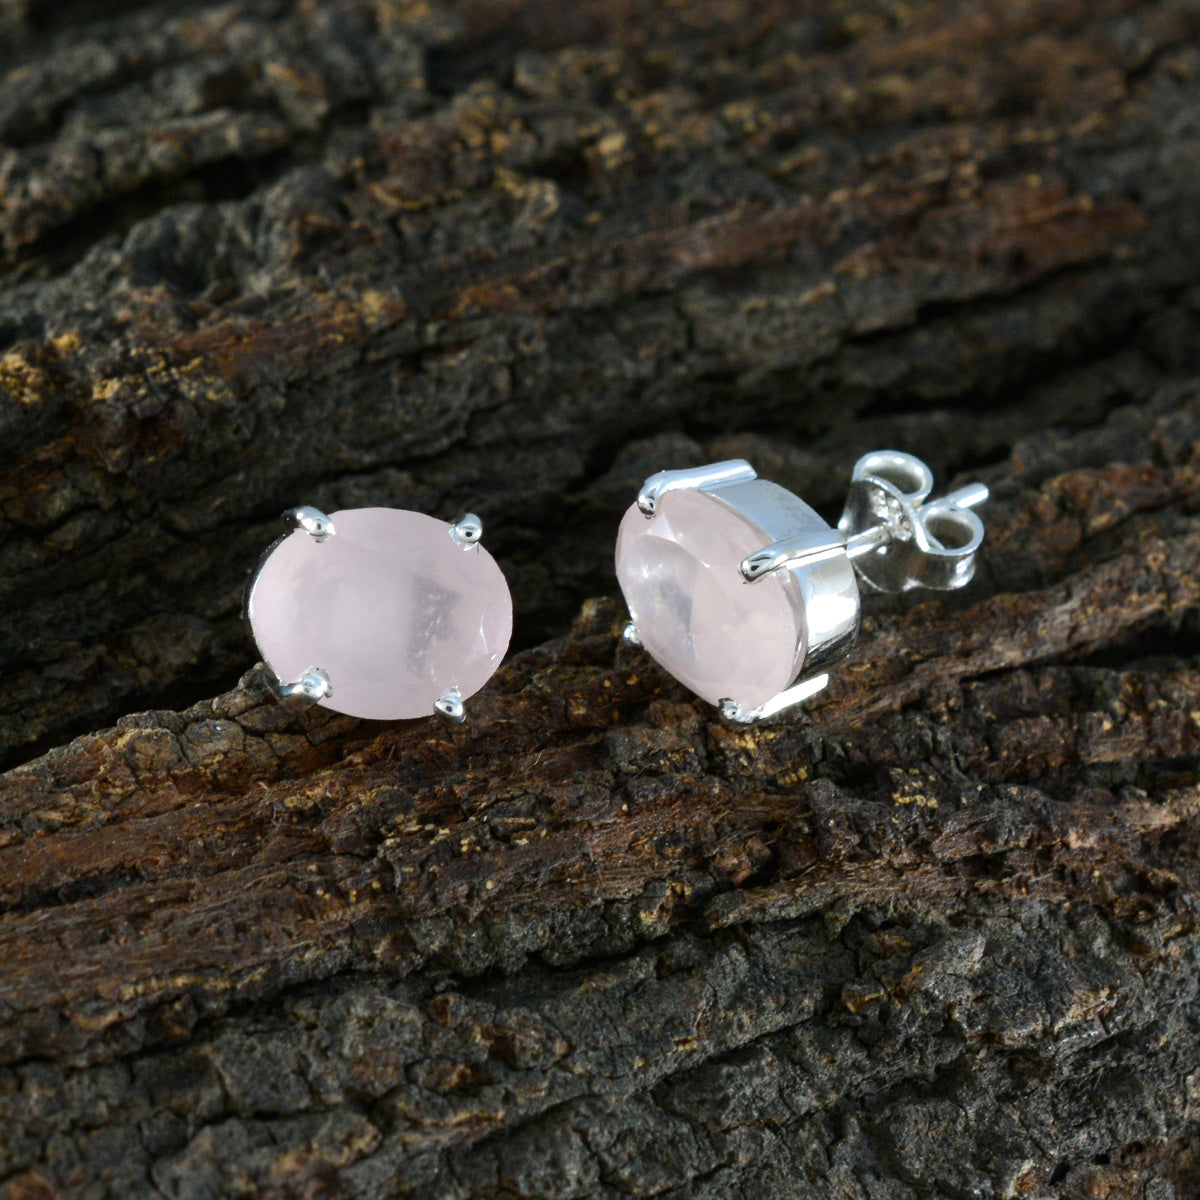 Riyo – boucle d'oreille en argent sterling pour femme, en quartz rose, réglage de la lunette, boucle d'oreille rose